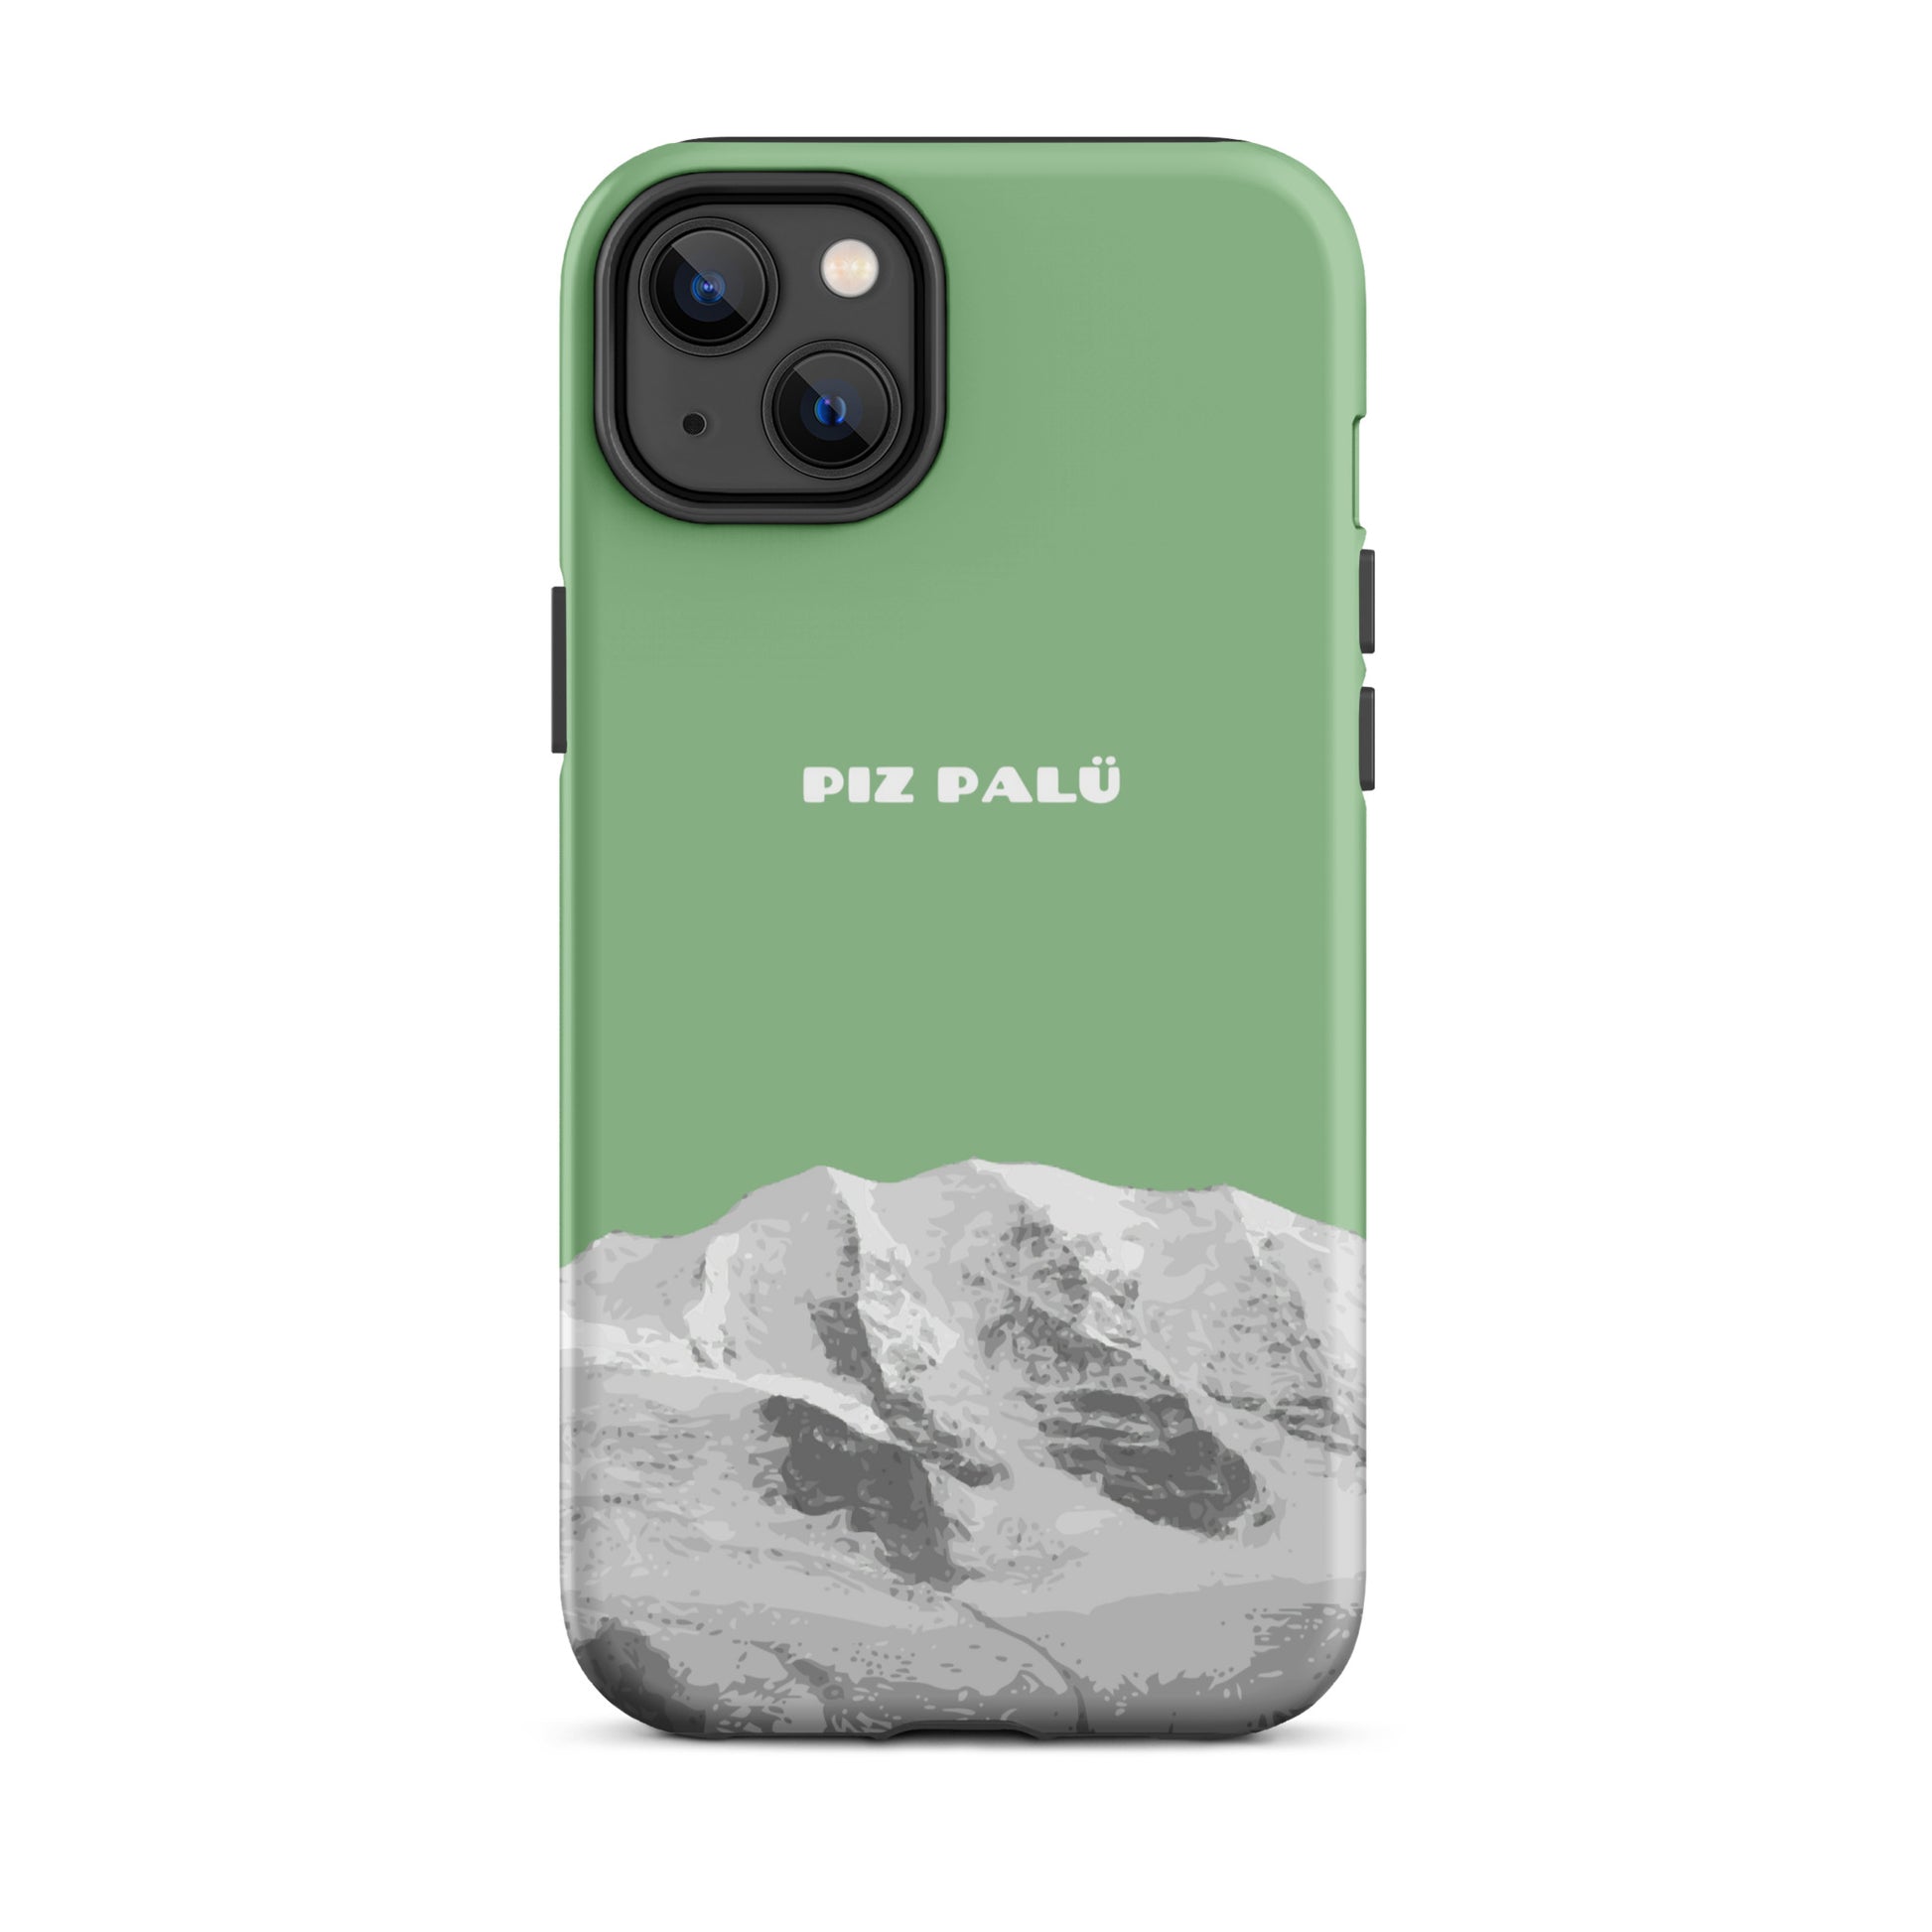 Hülle für das iPhone 14 Plus von Apple in der Farbe Hellgrün, dass den Piz Palü in Graubünden zeigt.